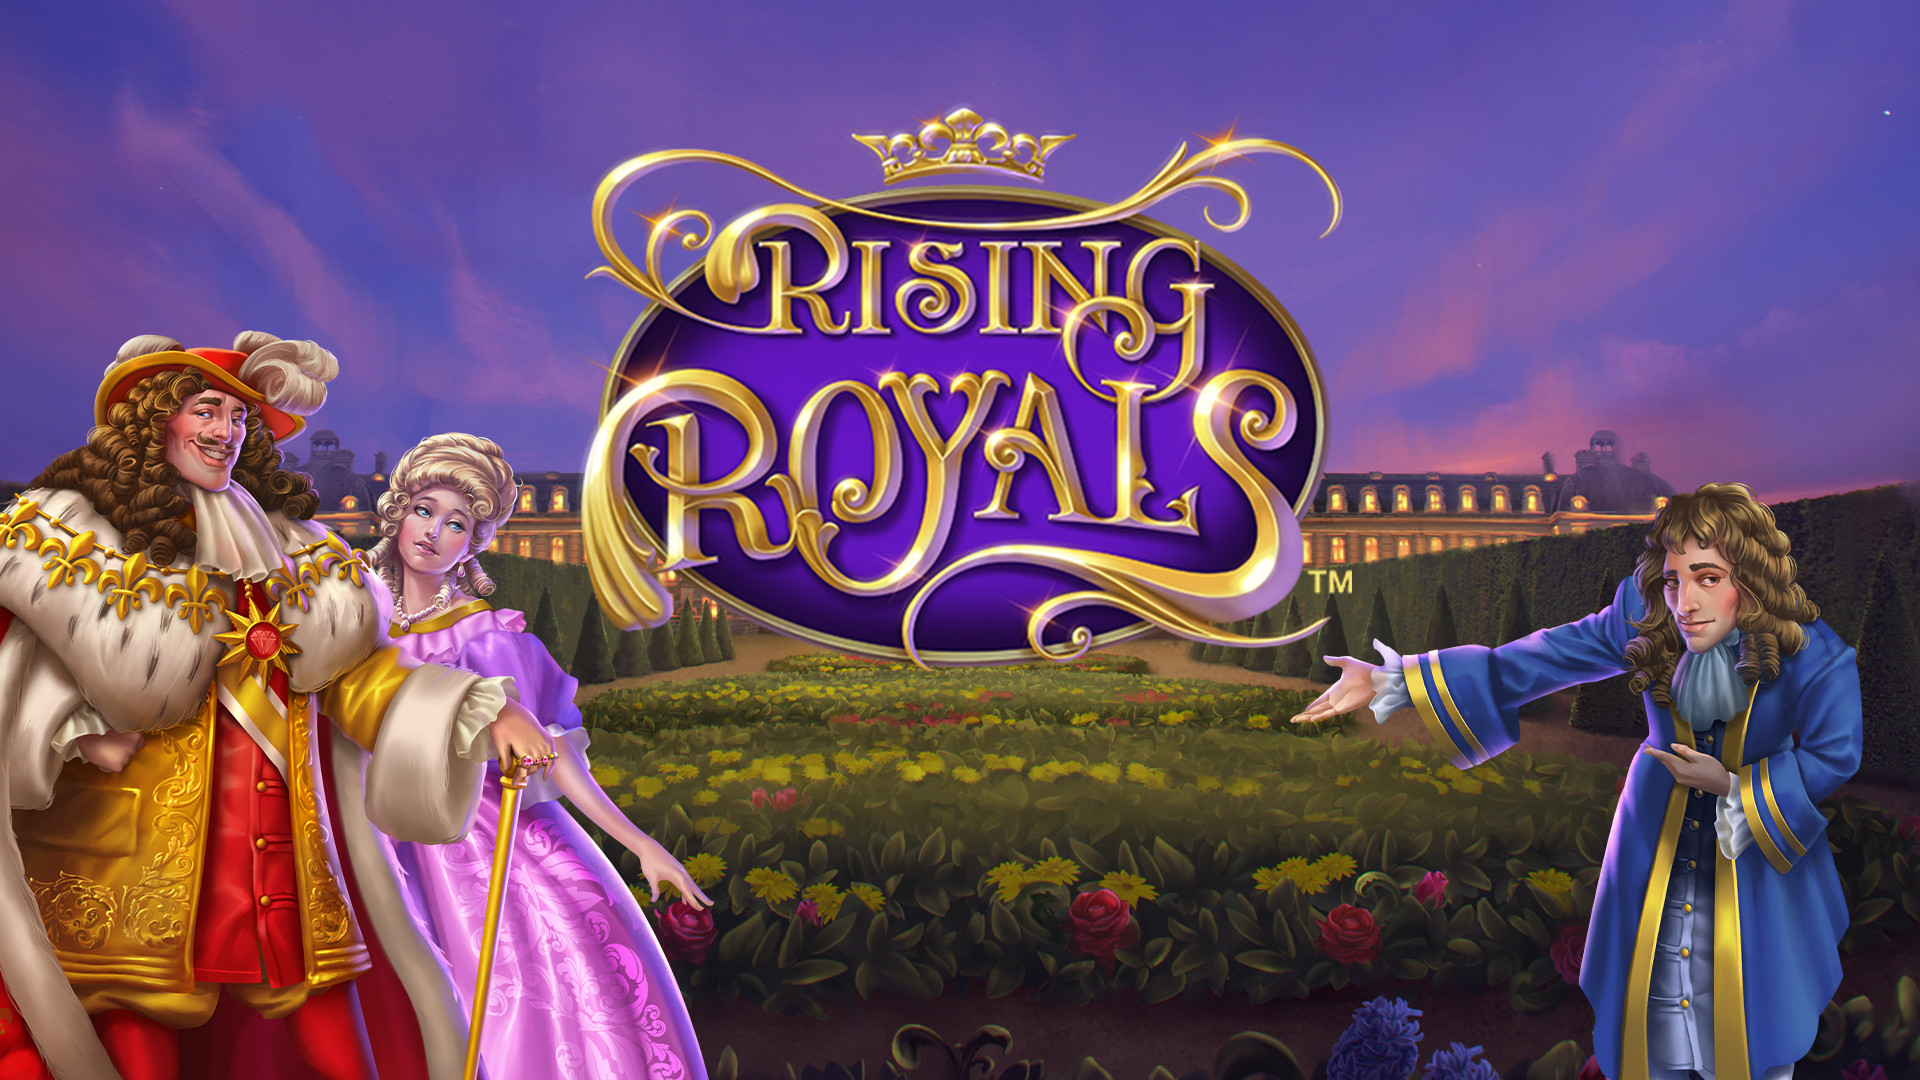 Rising Royals